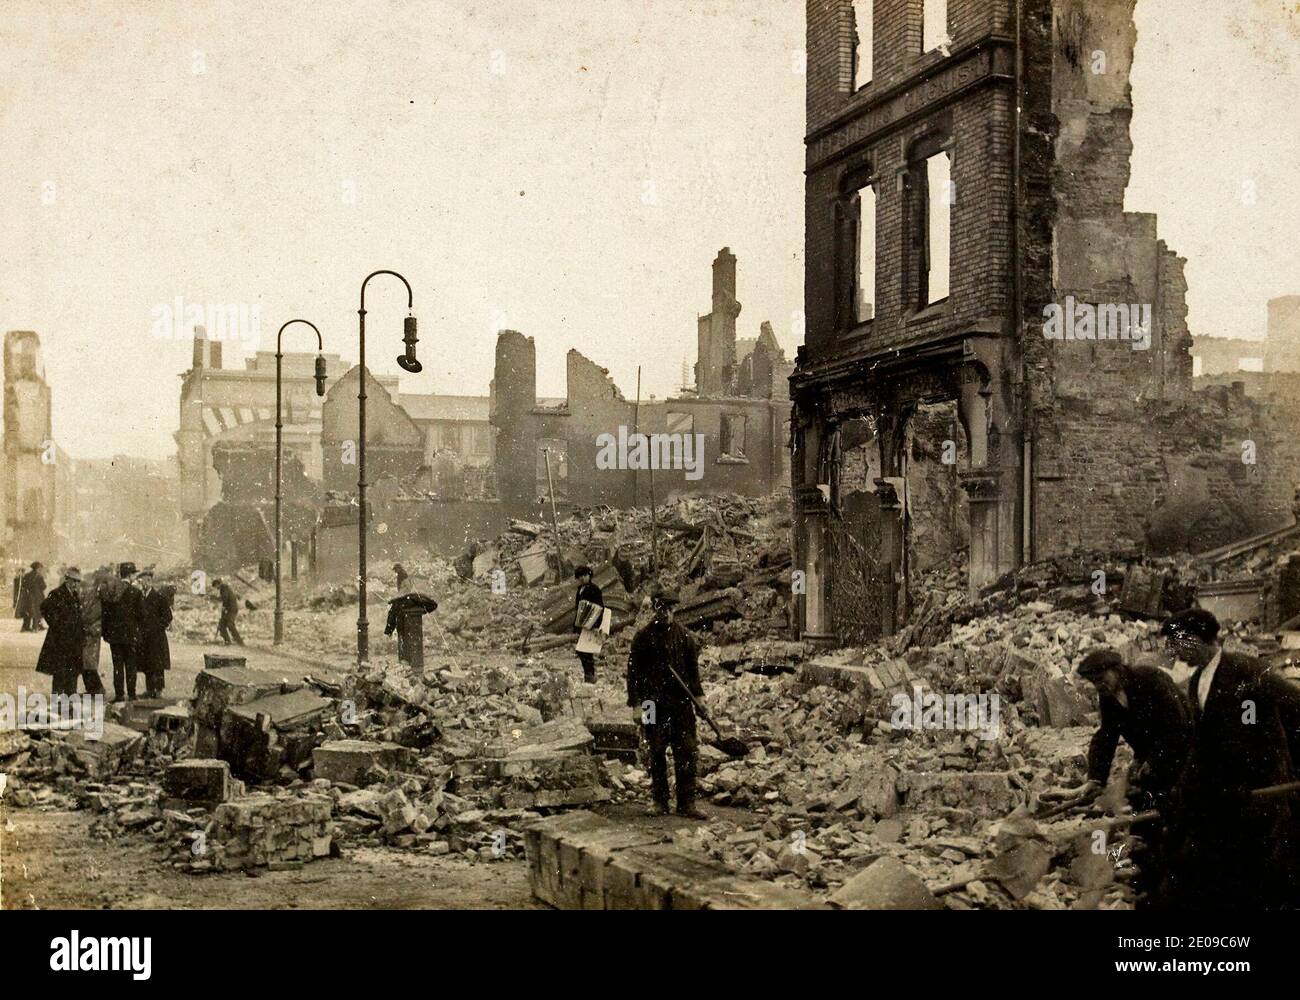 St Patrick's Street in Cork, Irland am (oder um) 14. Dezember 1920. Das Bild fängt die Nachwirkungen von dem ein, was als die Verbrennung von Cork bekannt ist. Dieses Ereignis ereignete sich am 11-12. Dezember 1920 während des irischen Unabhängigkeitskrieges. Stockfoto